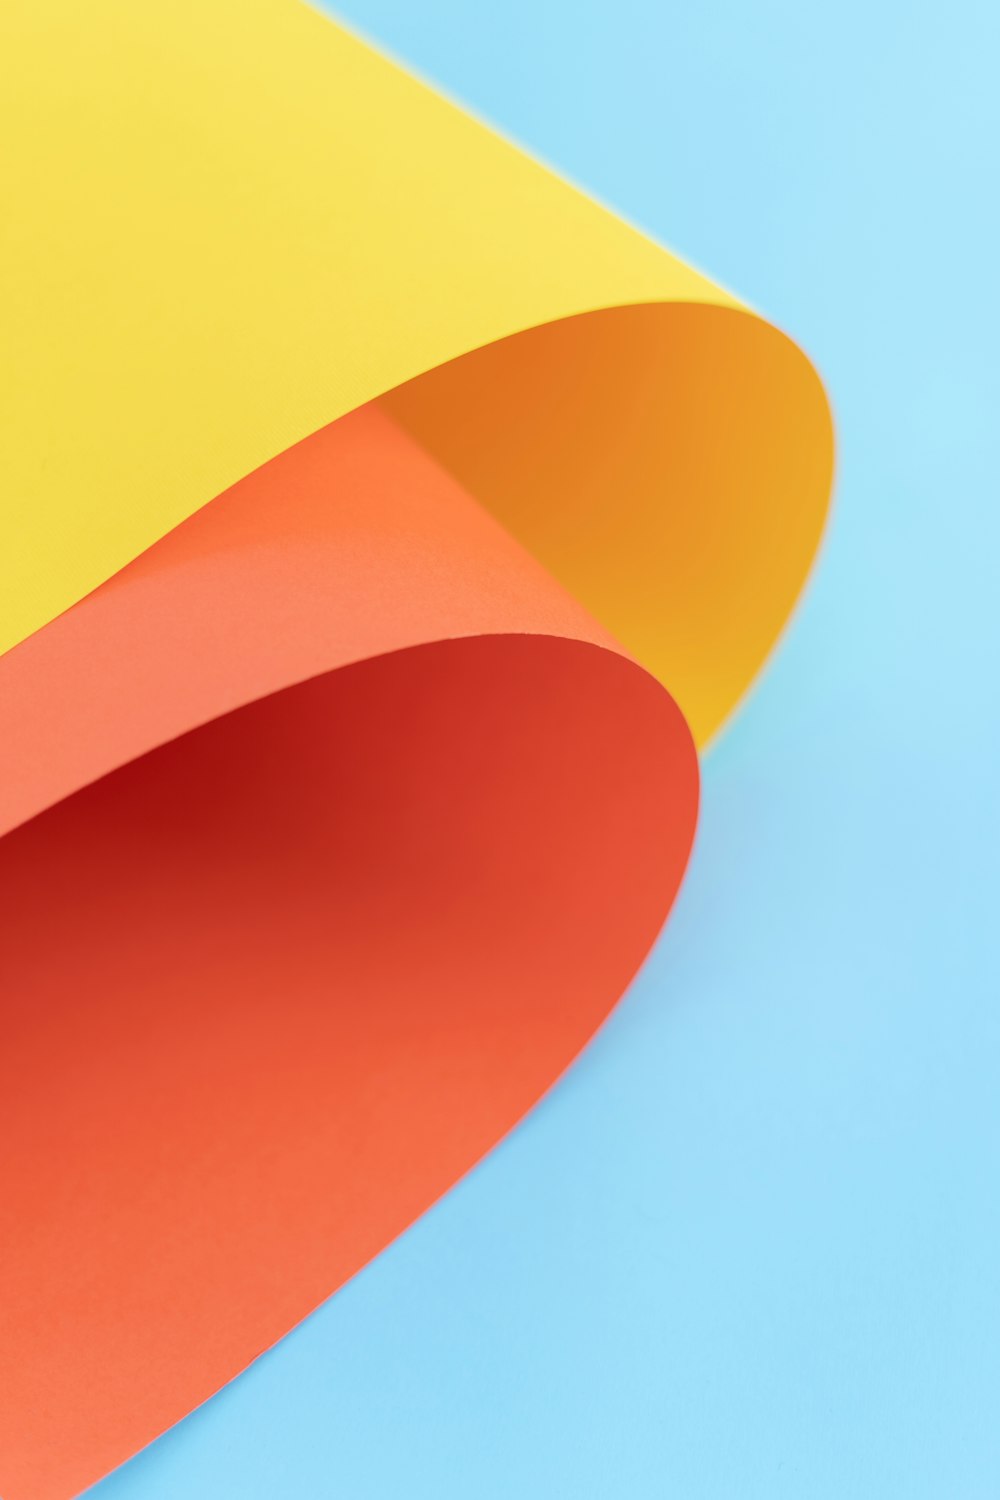 Fond d’écran d’art abstrait jaune, orange et rouge